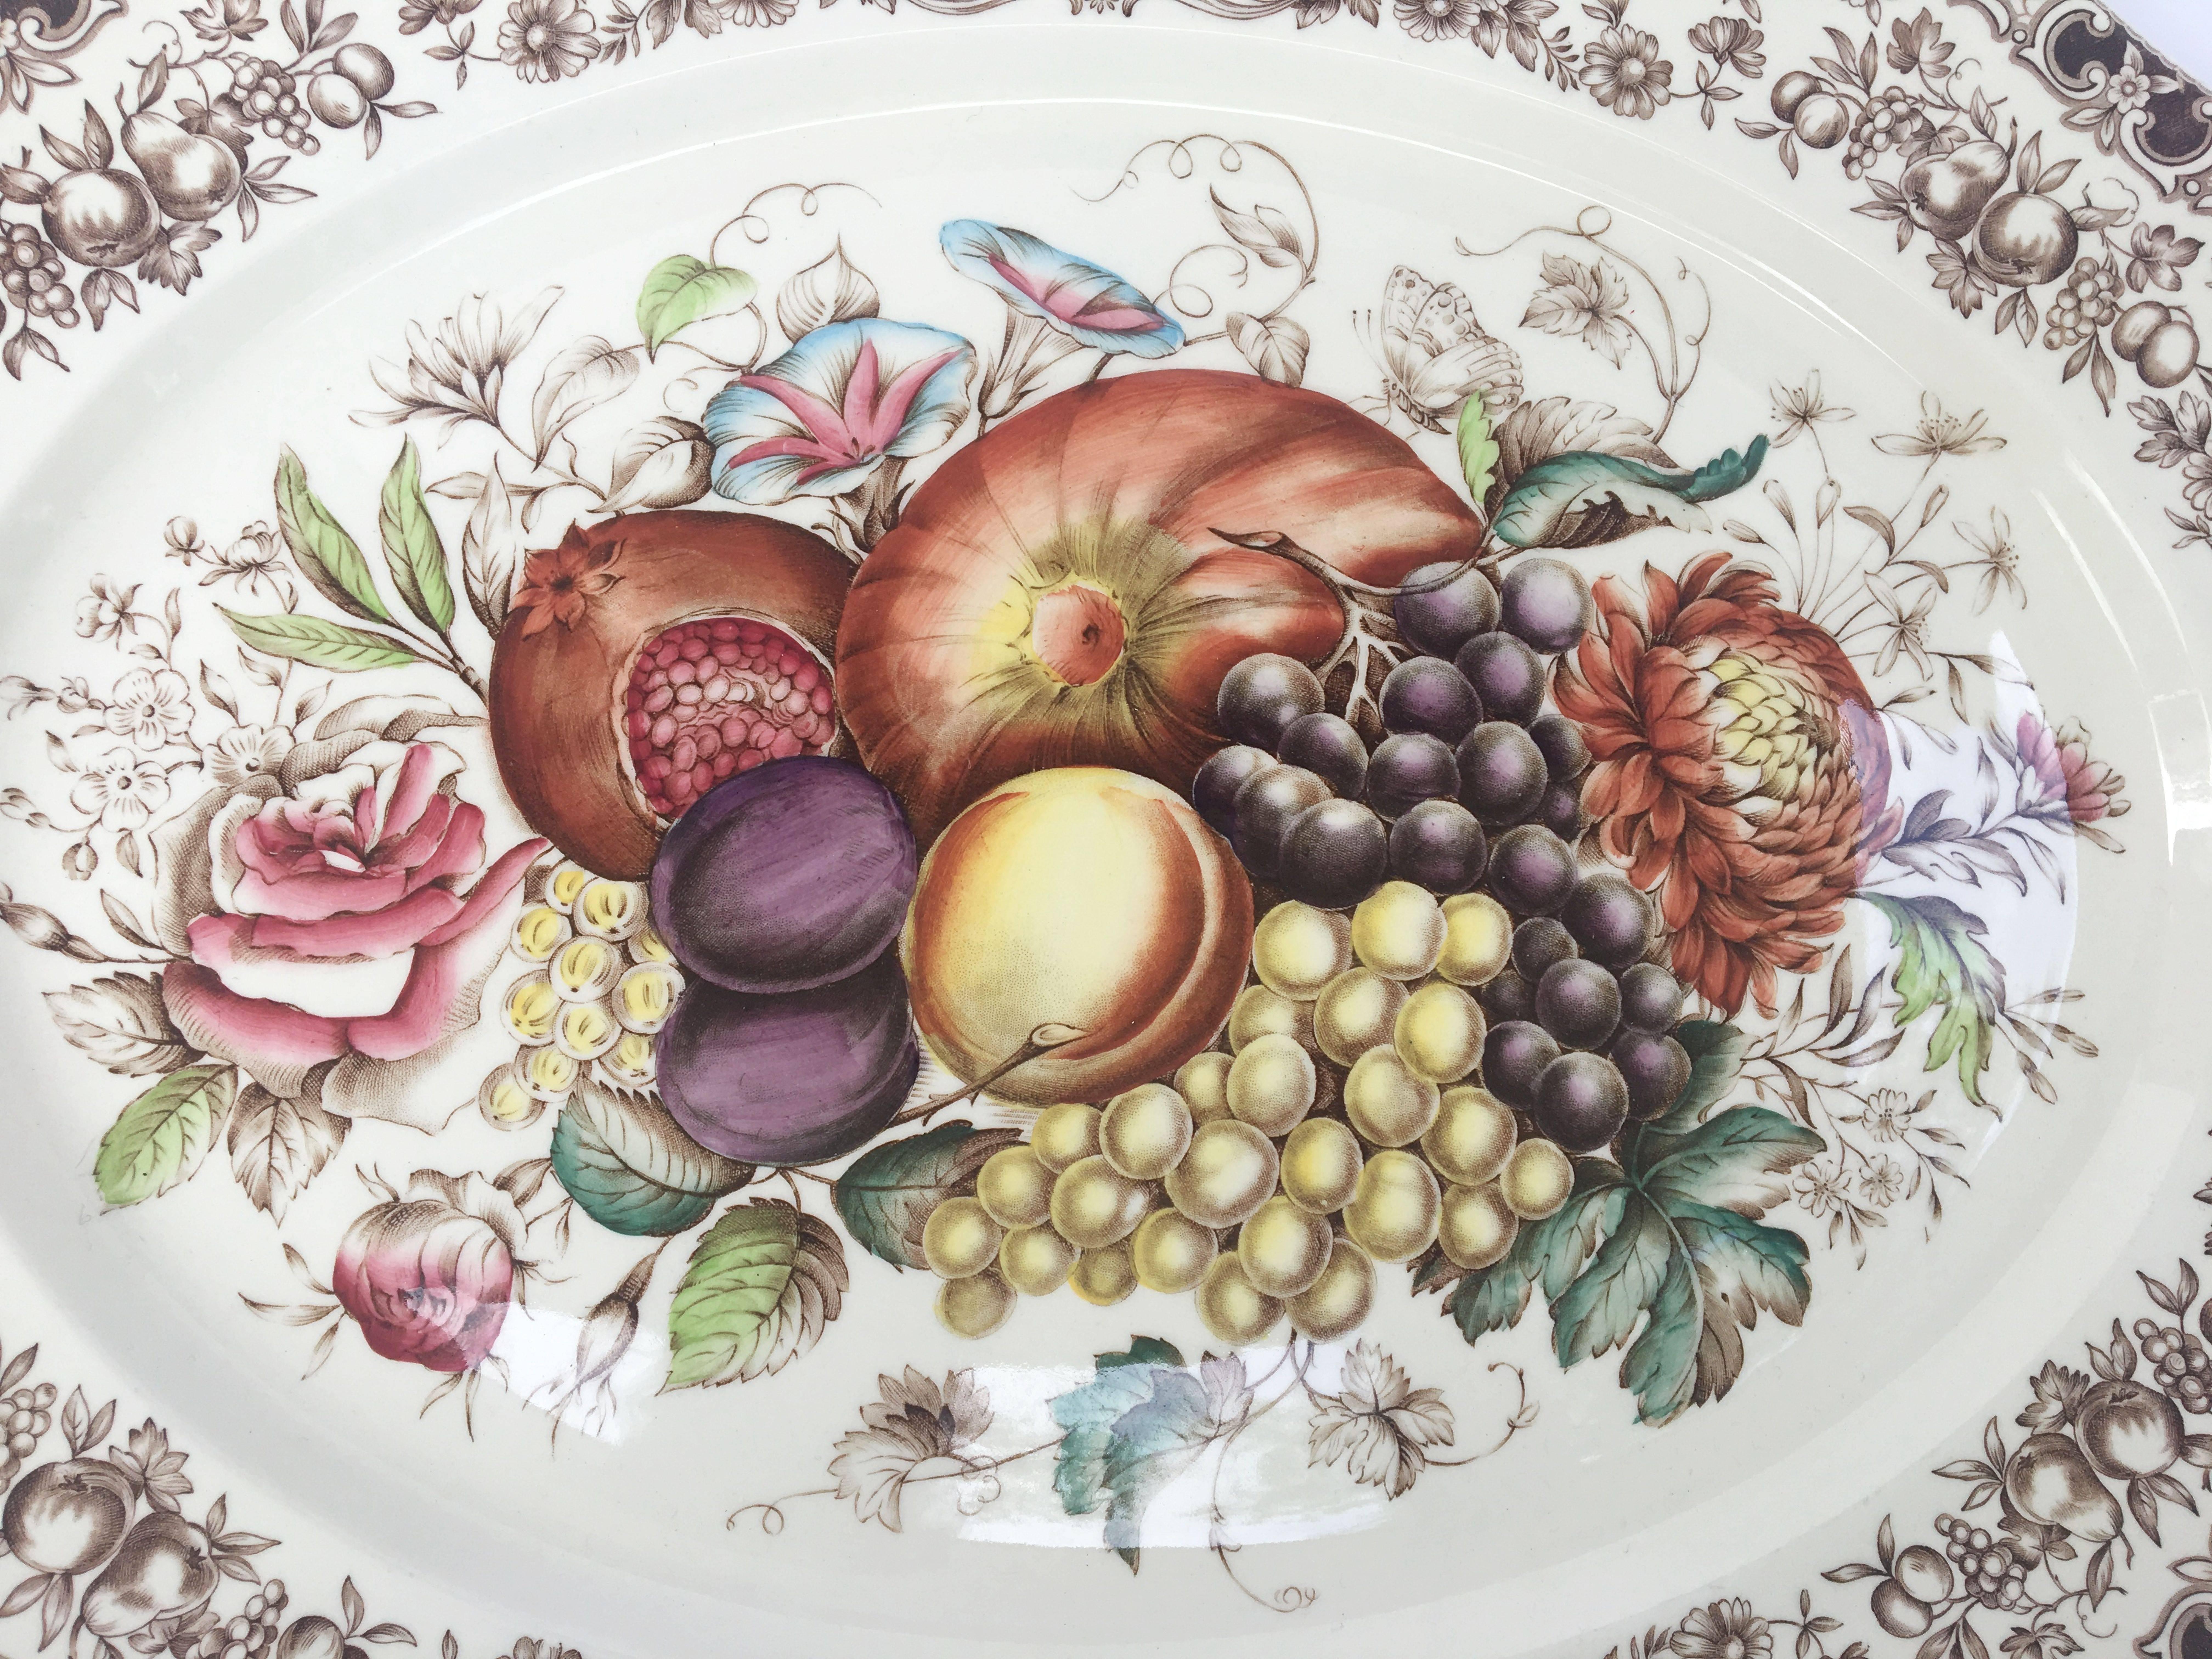 Un grand plat de service vintage représentant le motif de la récolte de fruits en vaisselle transférée brune et blanche de la célèbre entreprise de poterie anglaise, Johnson Brothers.

Avec une étiquette brune authentique du milieu du siècle au